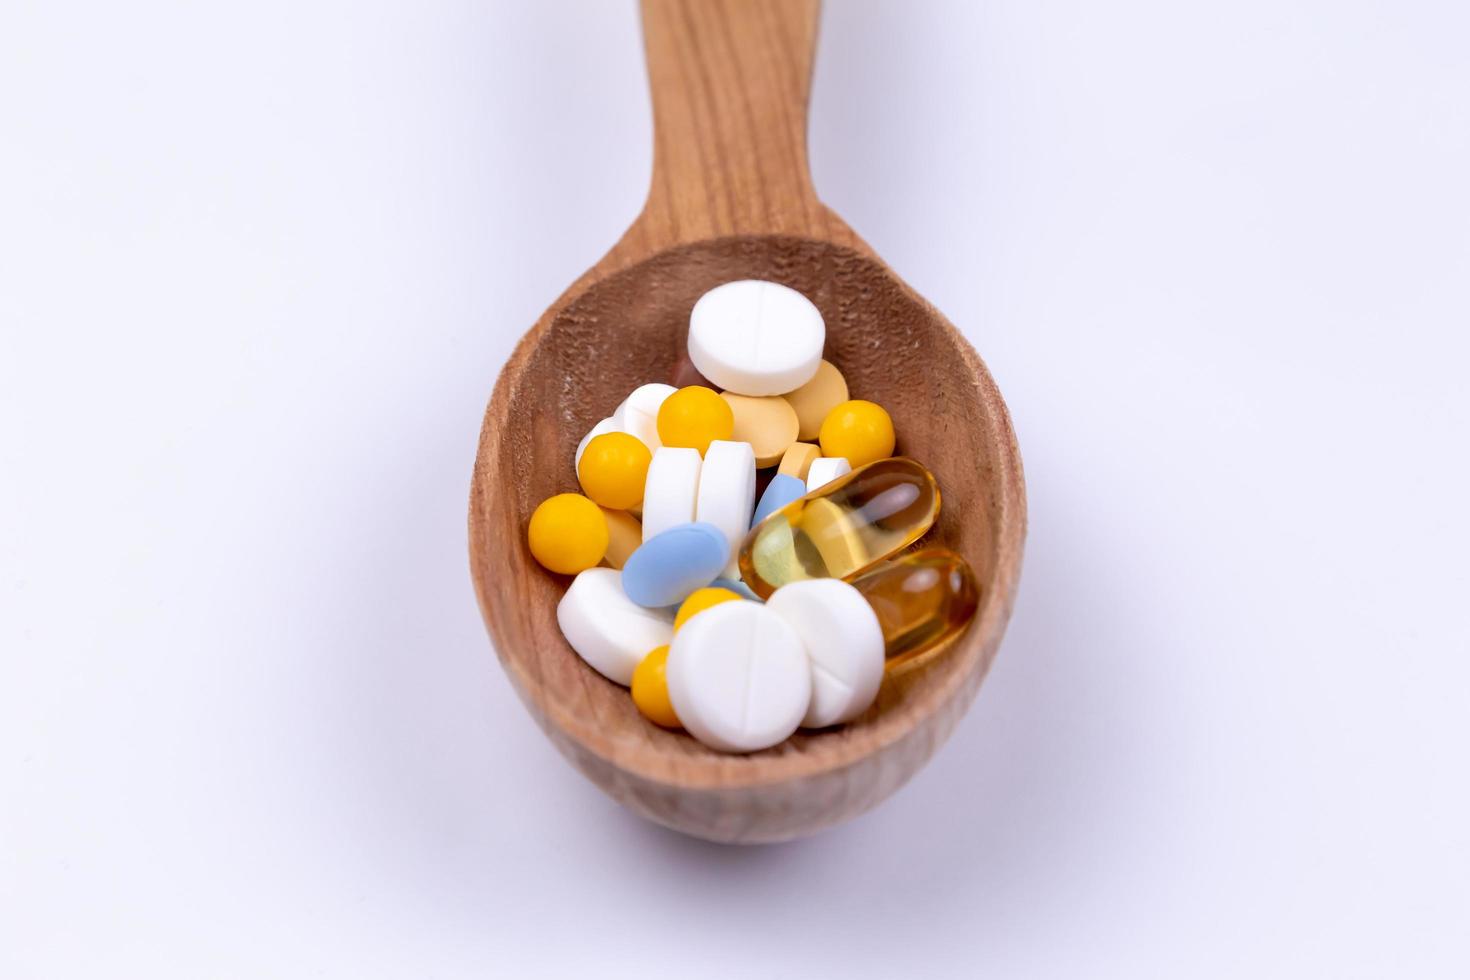 medicinpiller och läkemedel i träsked på vit bakgrund med kopieringsutrymme foto